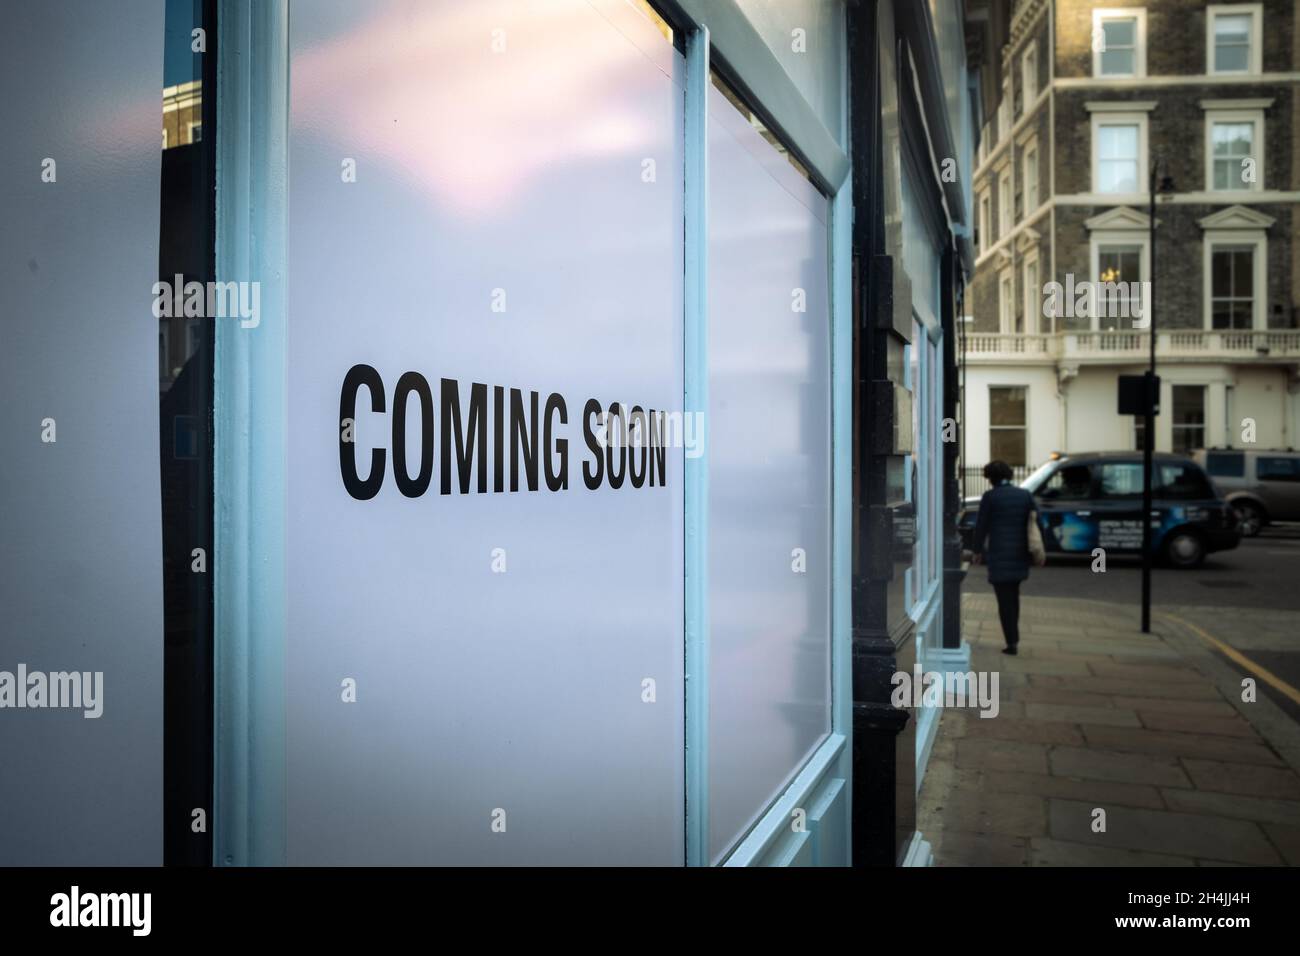 Negozio al dettaglio con il testo " Coming soon " che suggerisce l'apertura di un nuovo negozio Foto Stock